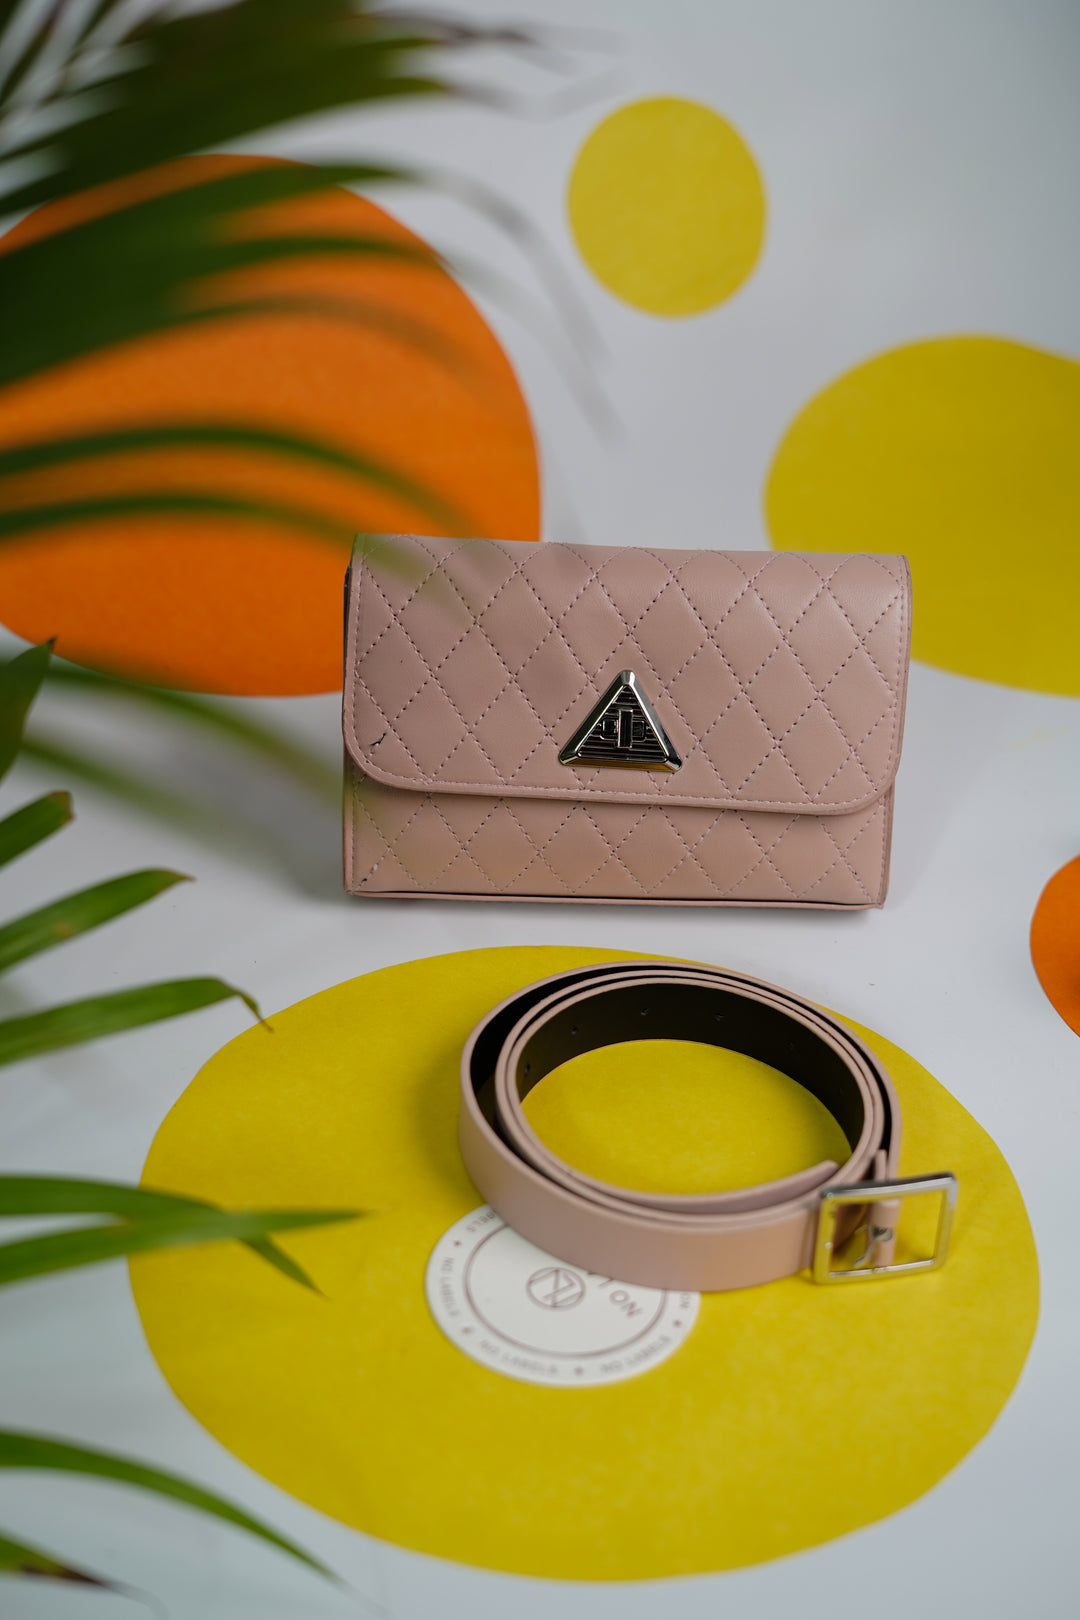 Elegantly Designed Stylish Pink Waist Belt Bag for Chic Fashion